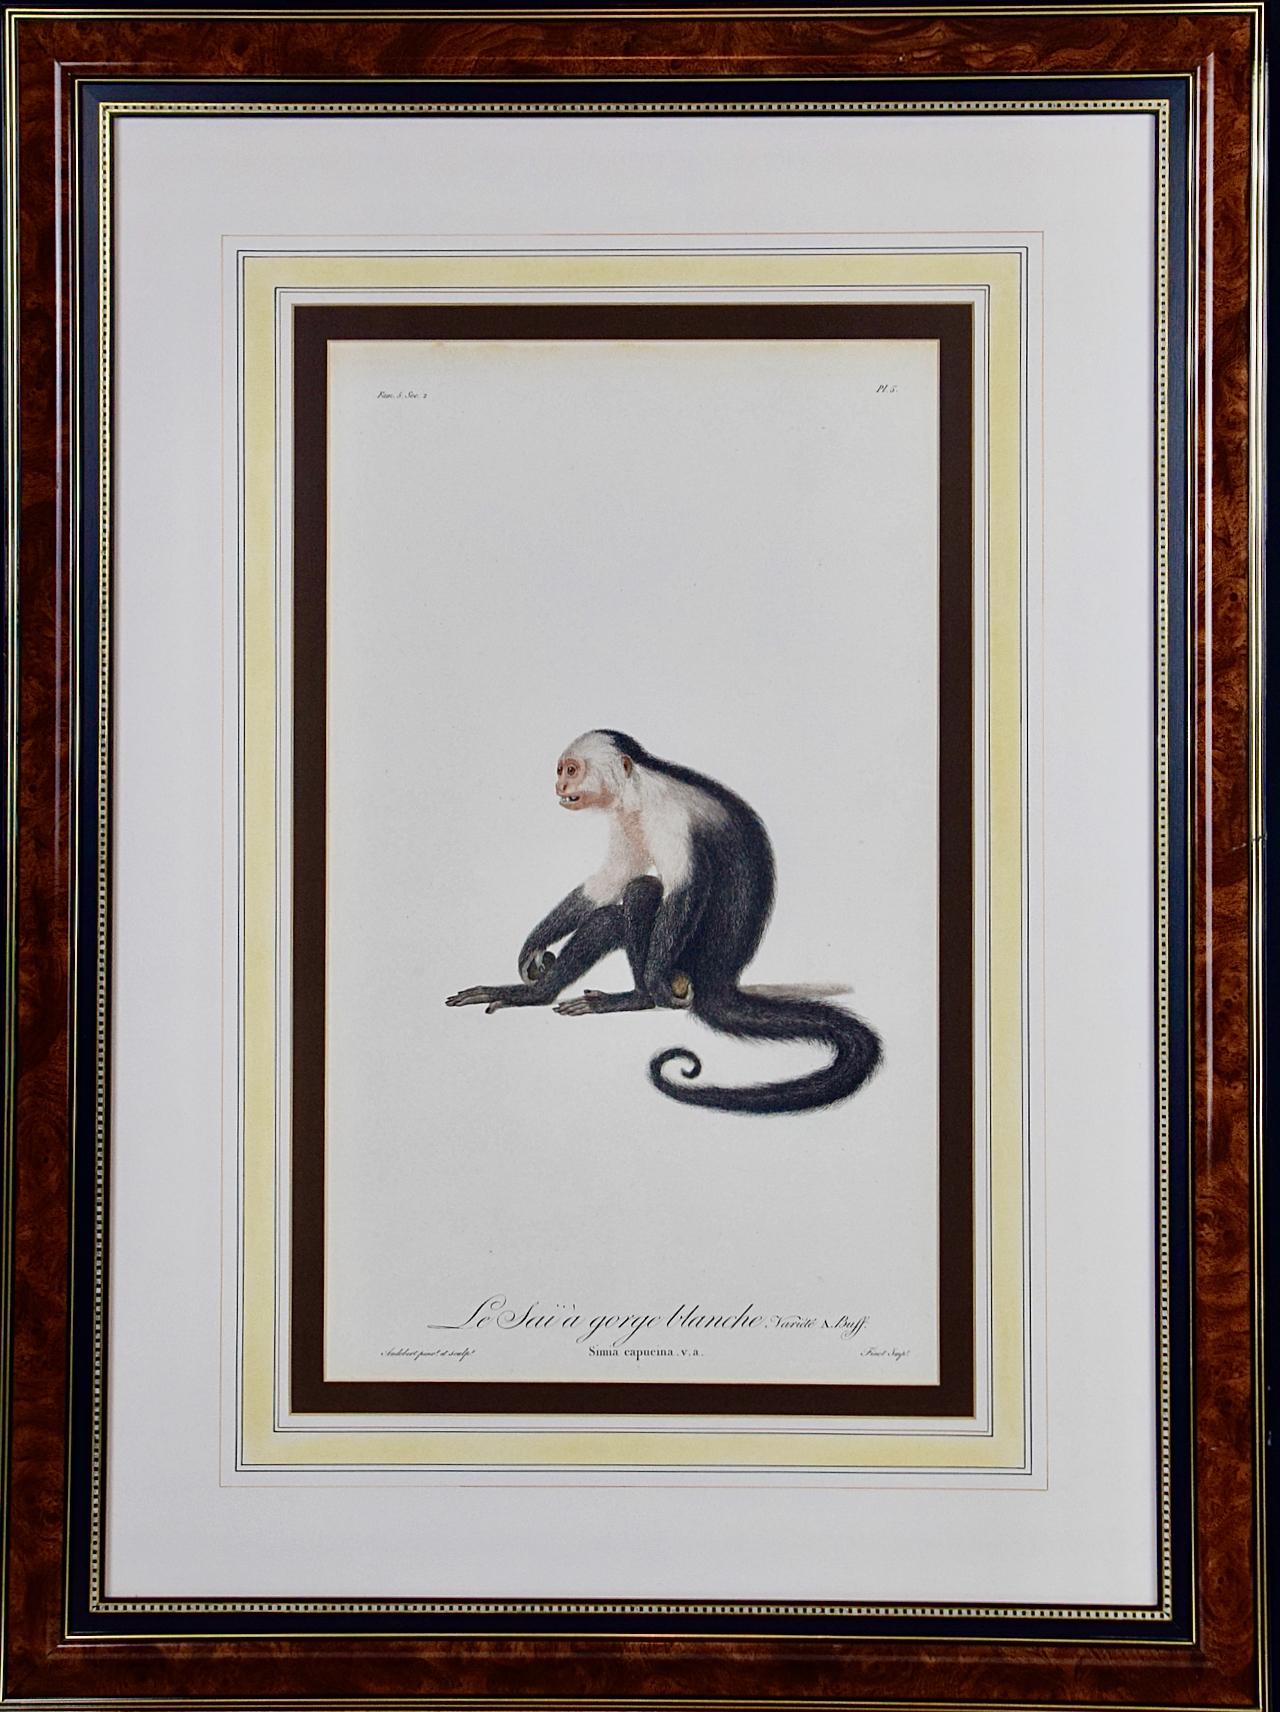 Jean Baptiste Auderbert Portrait Print - White-throated Capuchin Monkey: Framed Audebert 18th C. Hand-colored Engraving